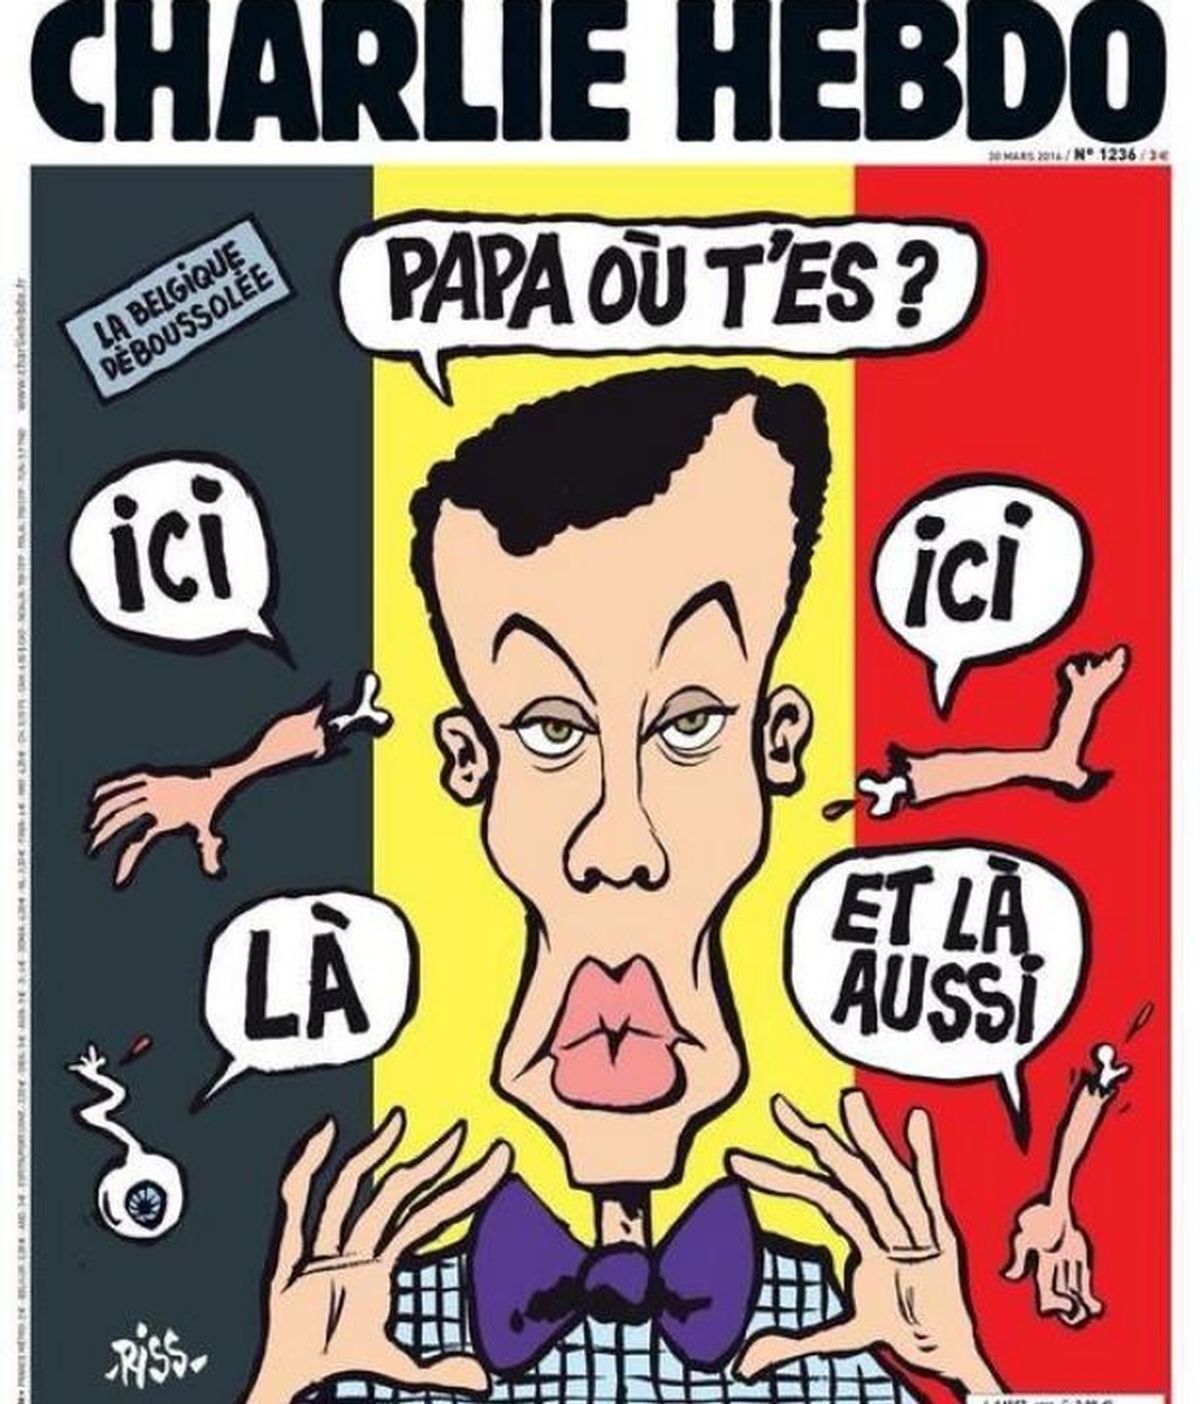 Una portada de Charlie Hebdo por los atentados de Bruselas desata la polémica